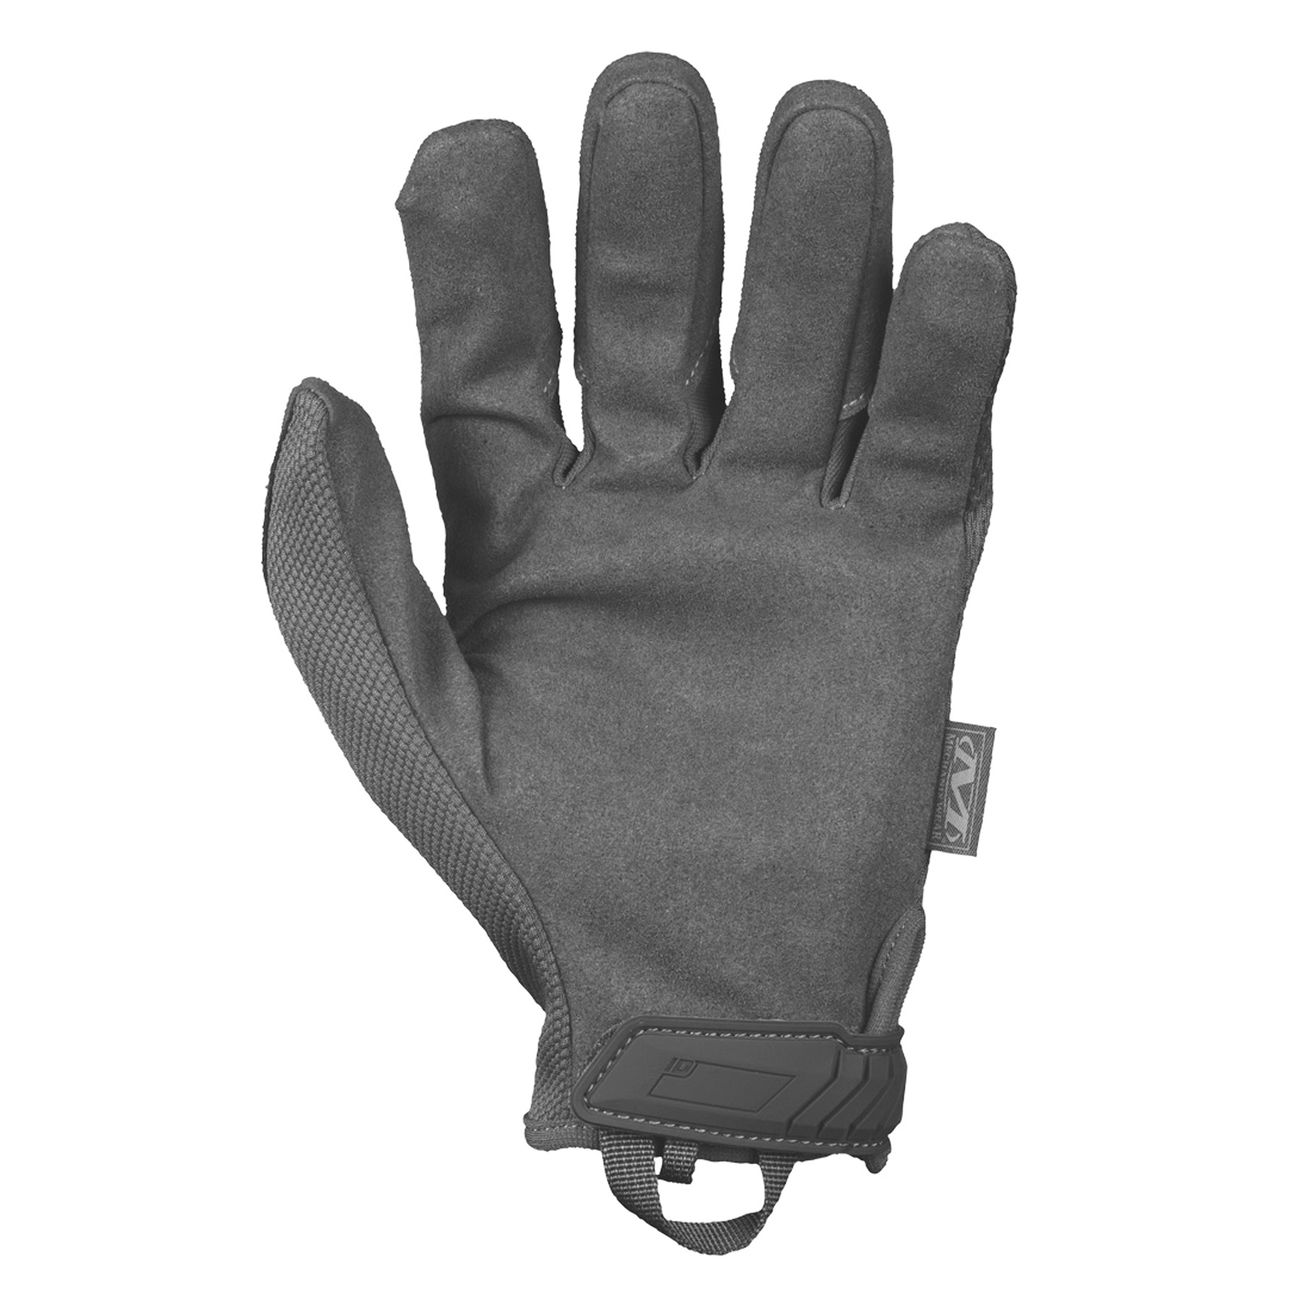 Mechanix Wear Original Glove Handschuhe grau Bild 1